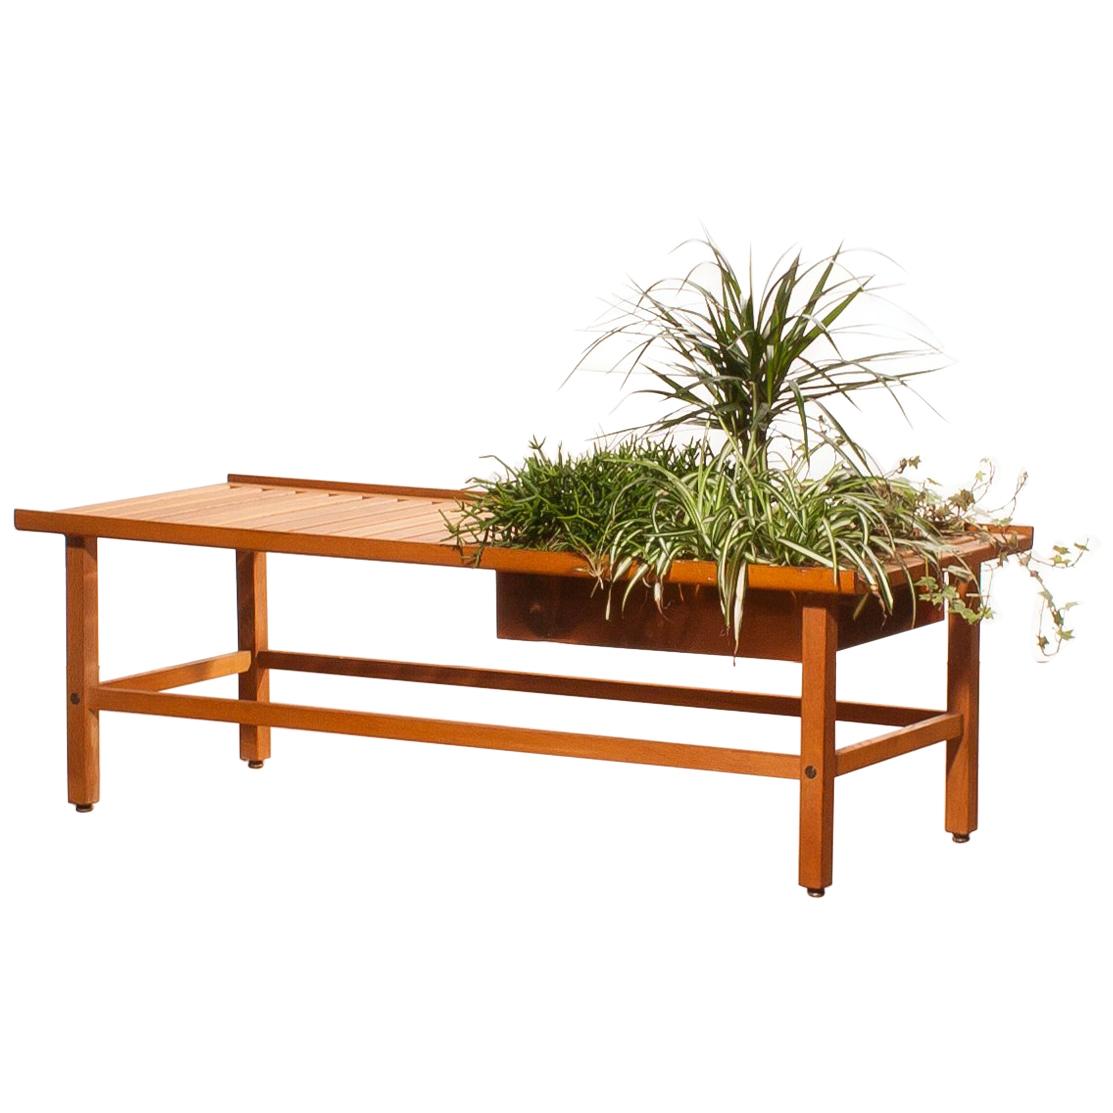 1950s, Beautiful Plant Bench or Coffee Table by Yngve Ekström in Teak